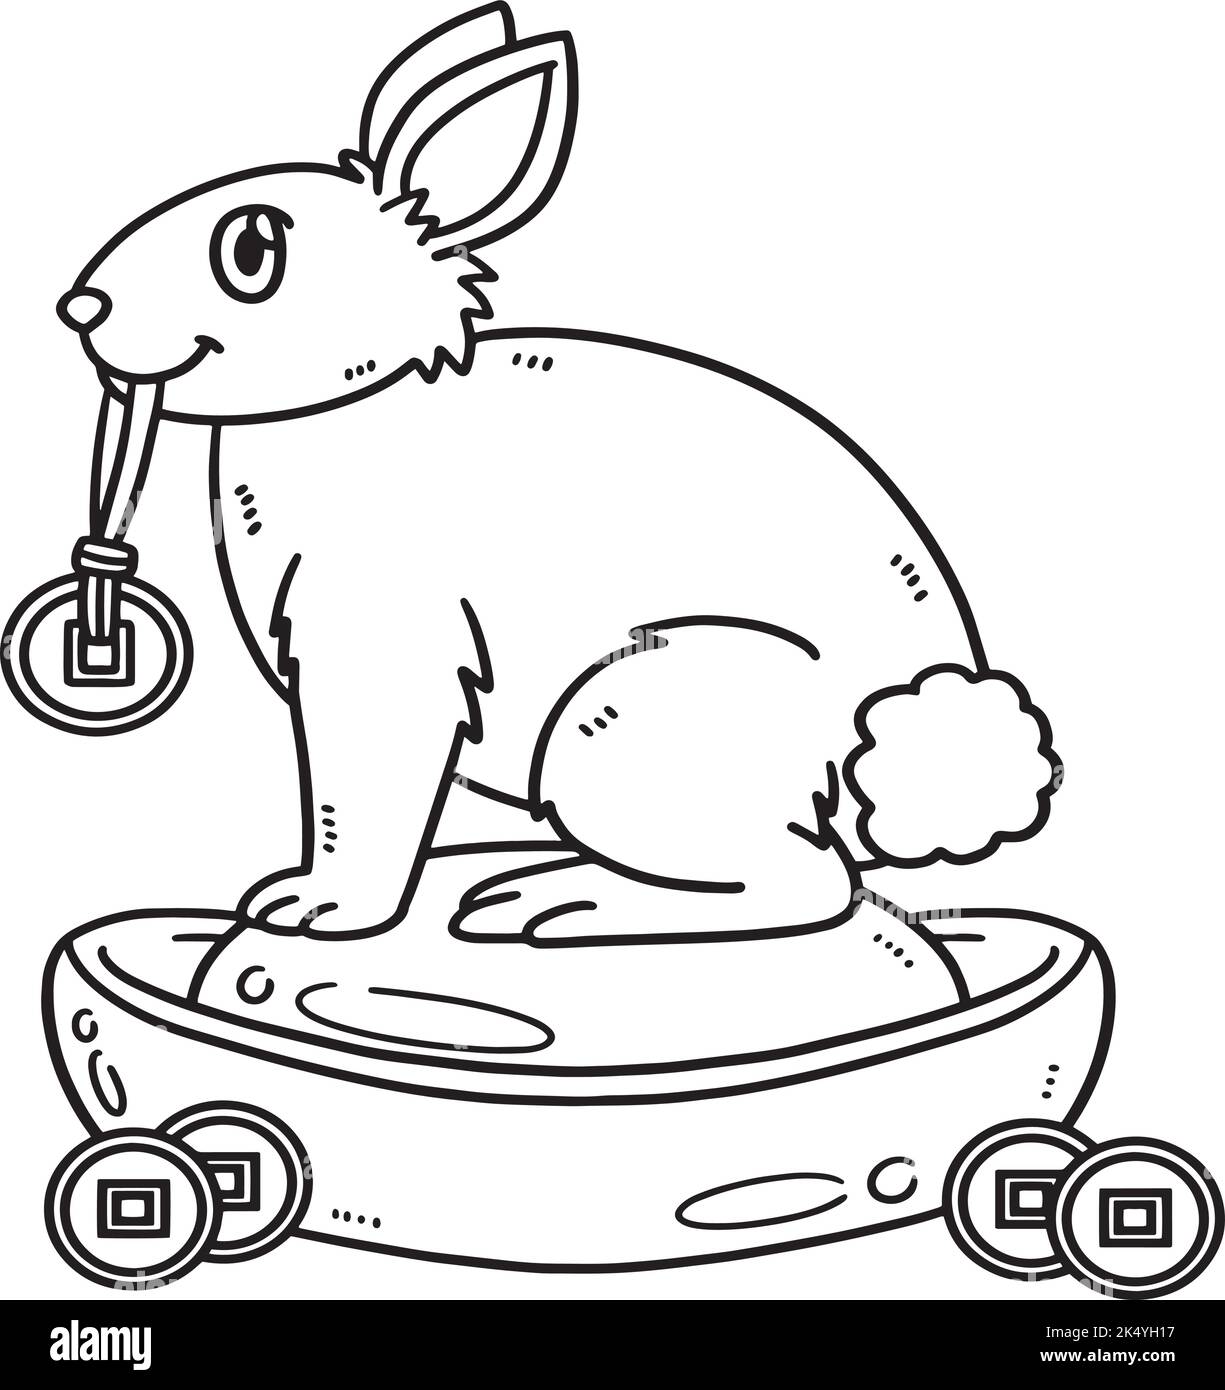 Page de coloriage isolée d'affichage de charme de lapin Illustration de Vecteur